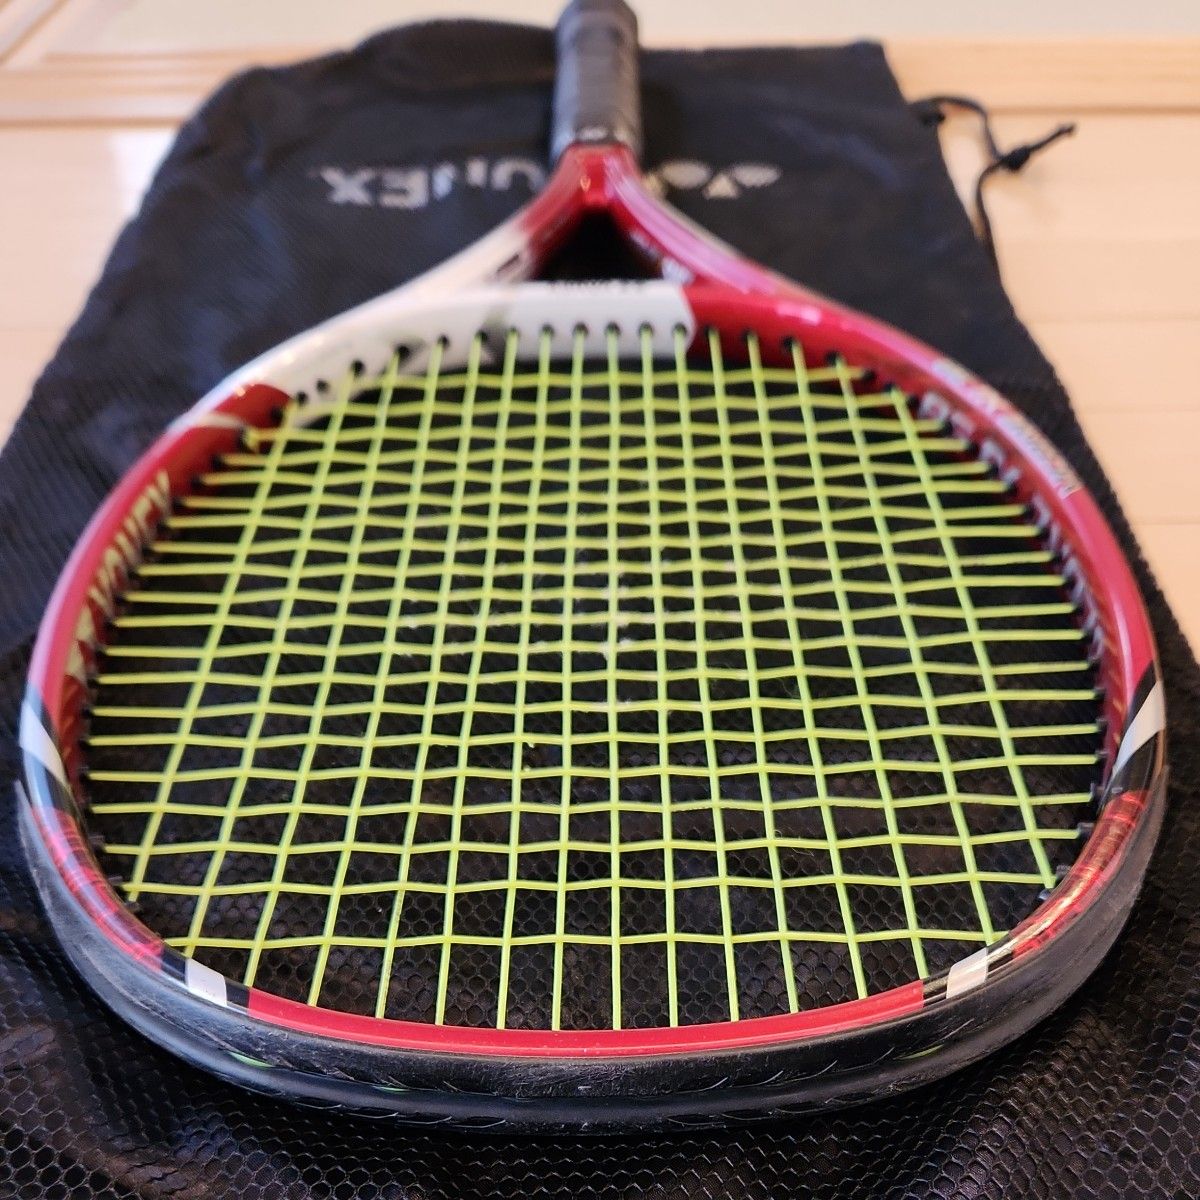 YONEX Vcore xi 98 G3 スマートテニスセンサー対応 エンドキャップ ヨネックス 硬式テニスラケット ブイコア98